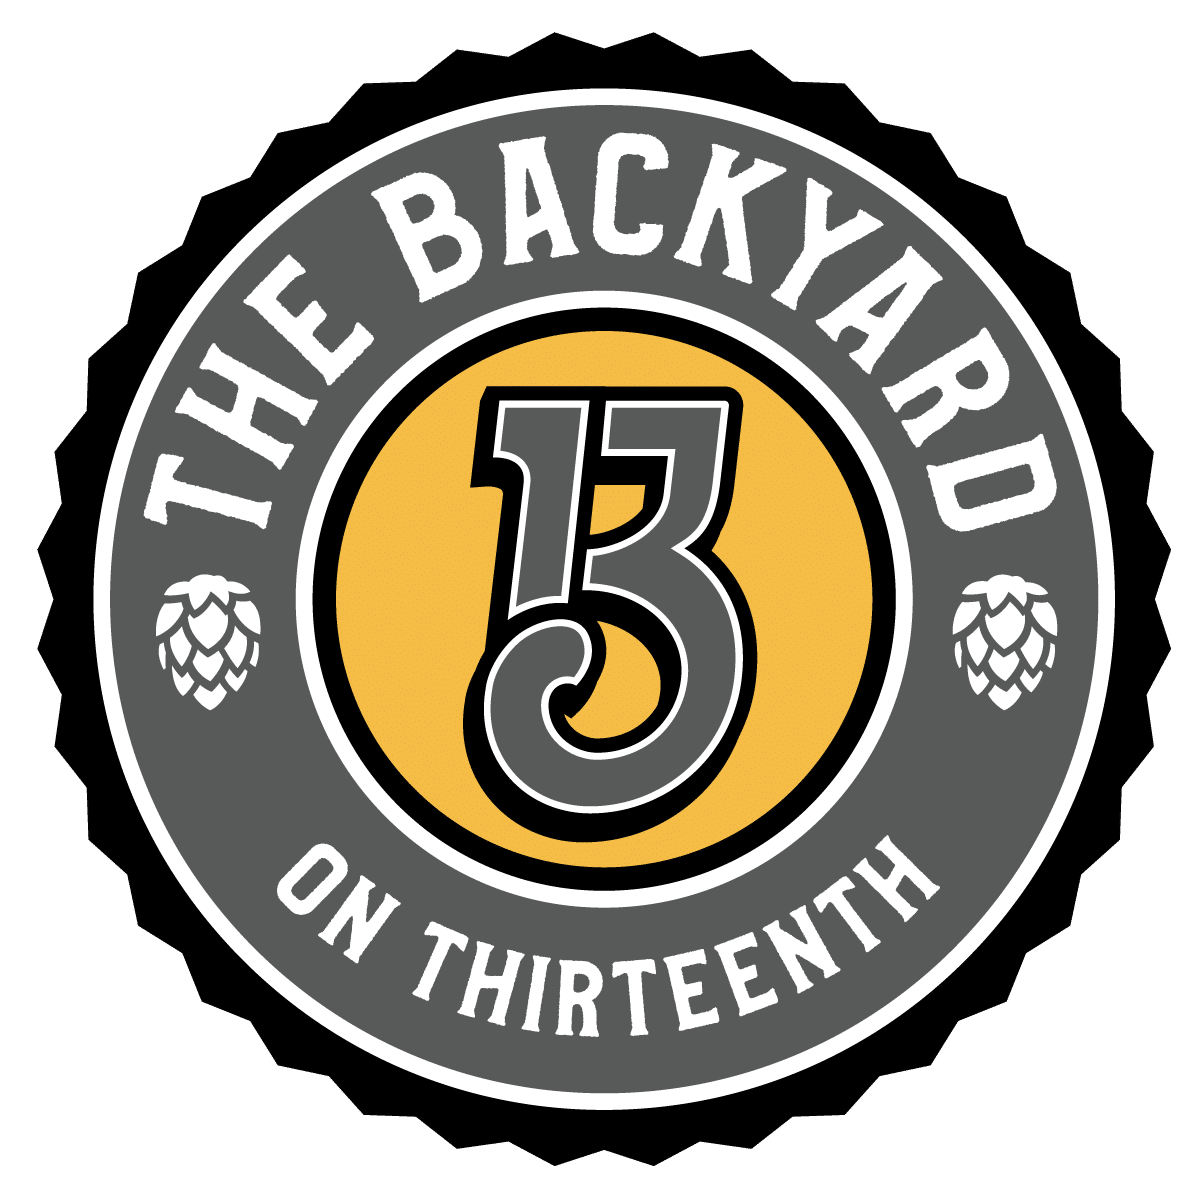 The Backyard Beer Garden Logo